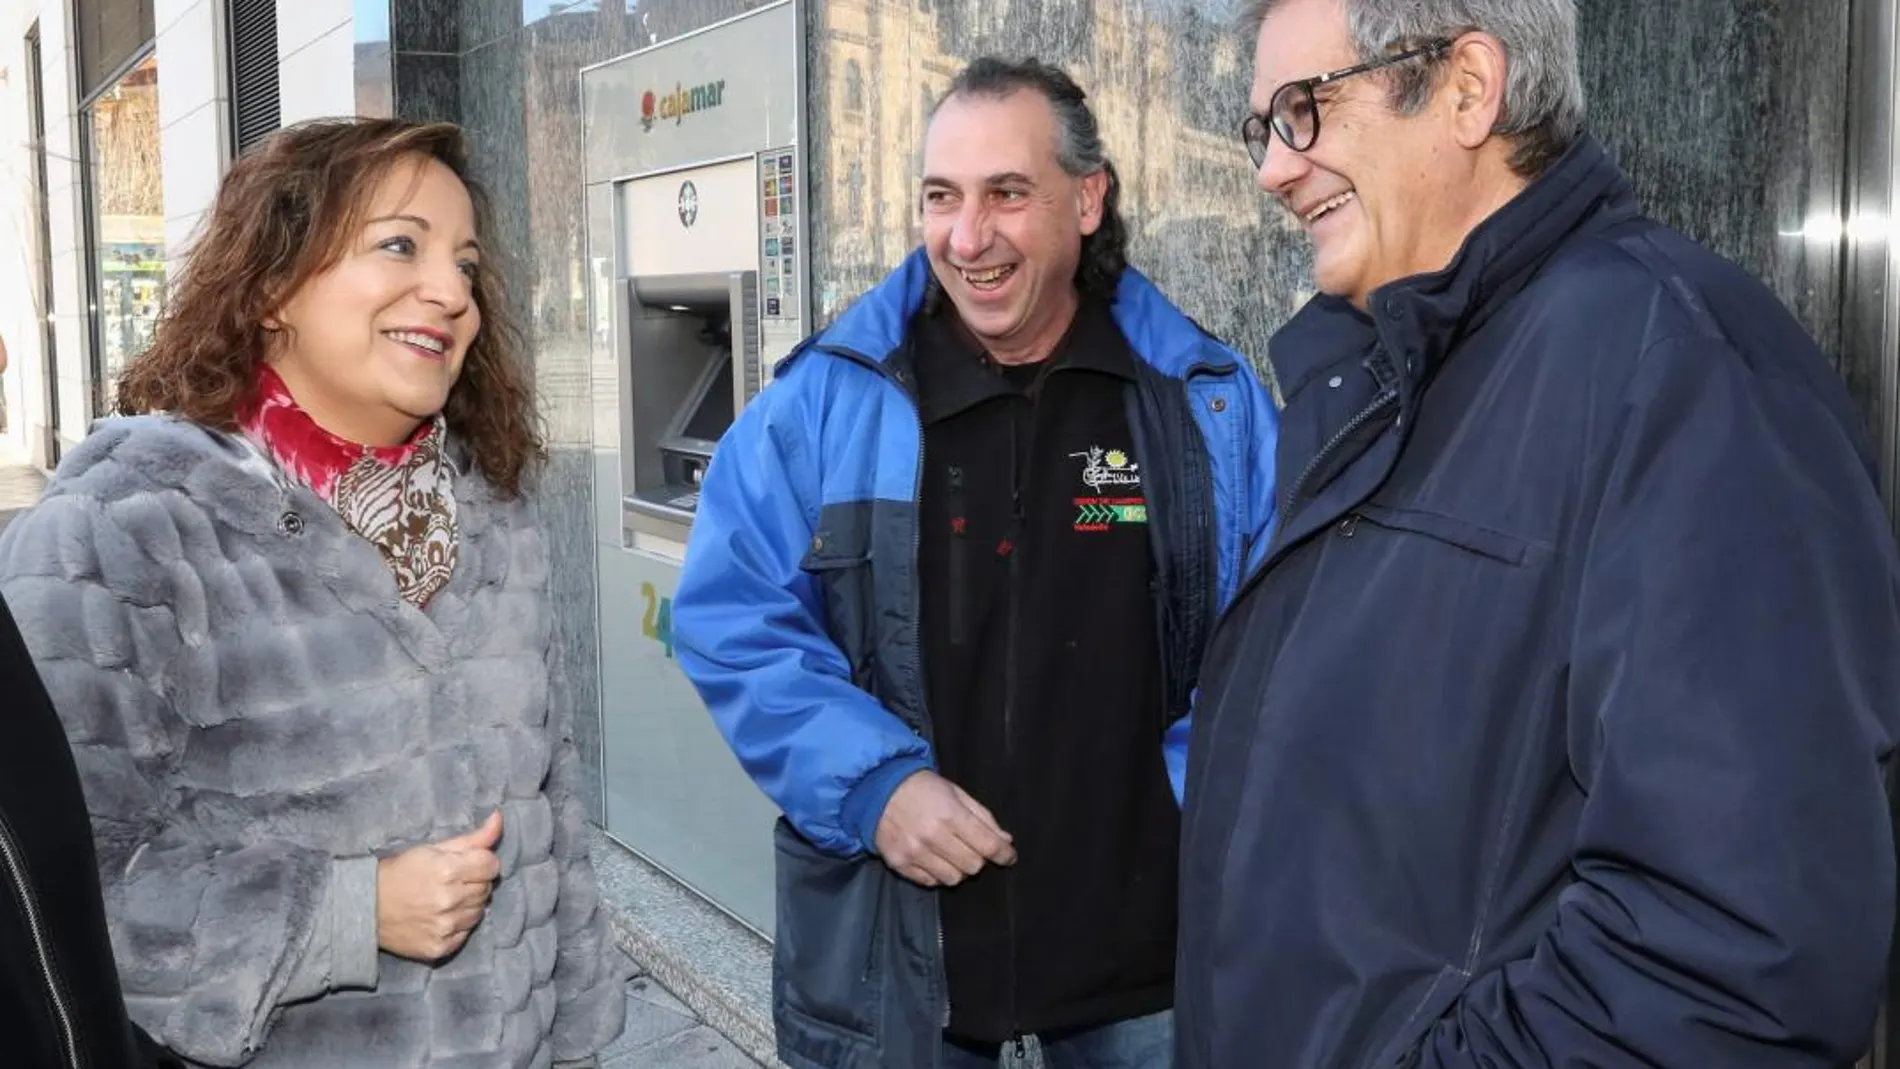 La eurodiputada socialista Iratxe García conversa con los líderes agrarios, Jesús Manuel González Palacín e Ignacio Arias